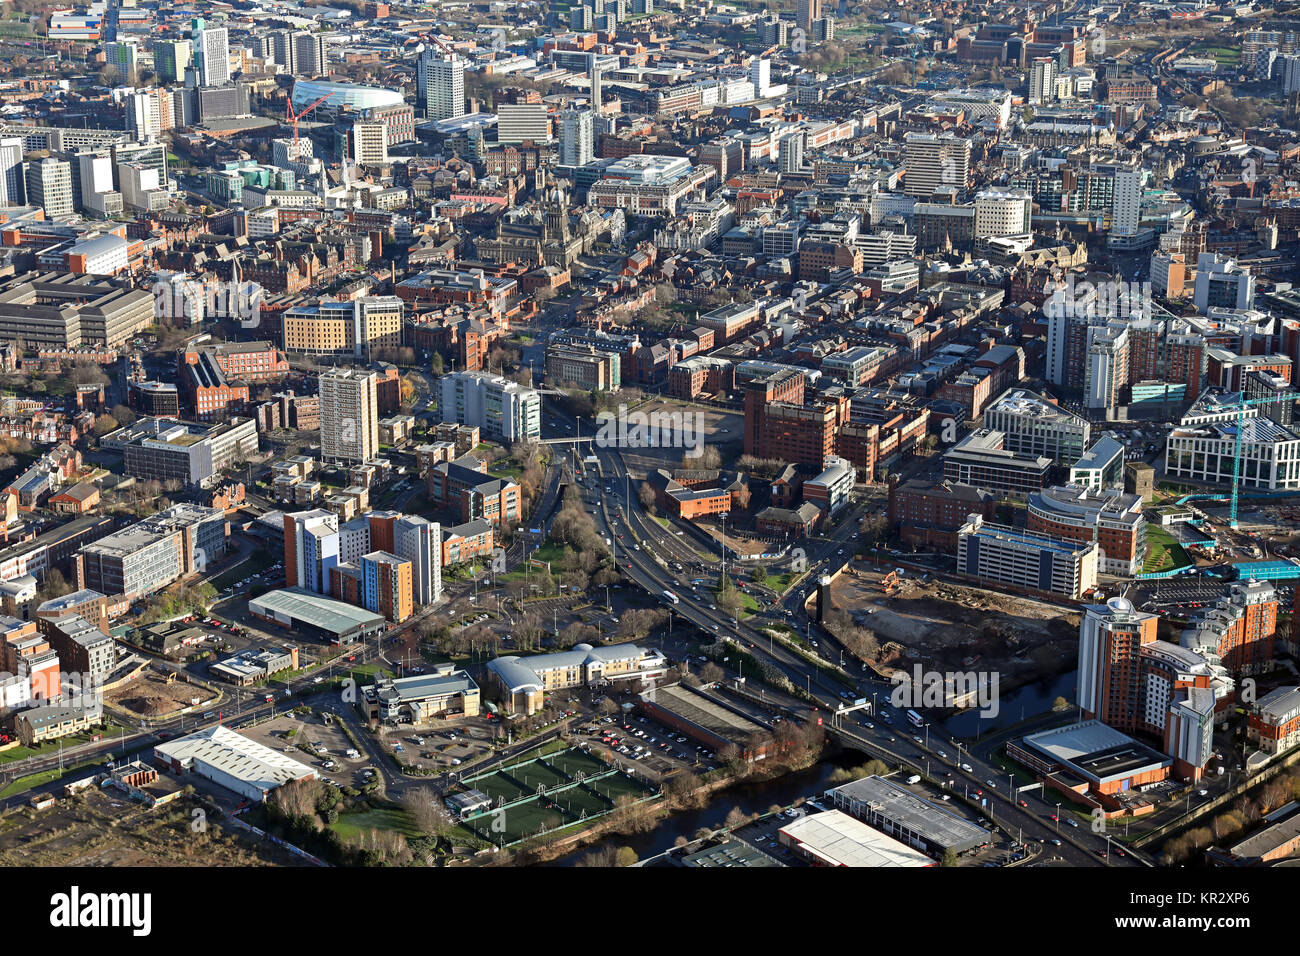 Vista aérea del centro de la ciudad de Leeds desde el oeste, REINO UNIDO Foto de stock